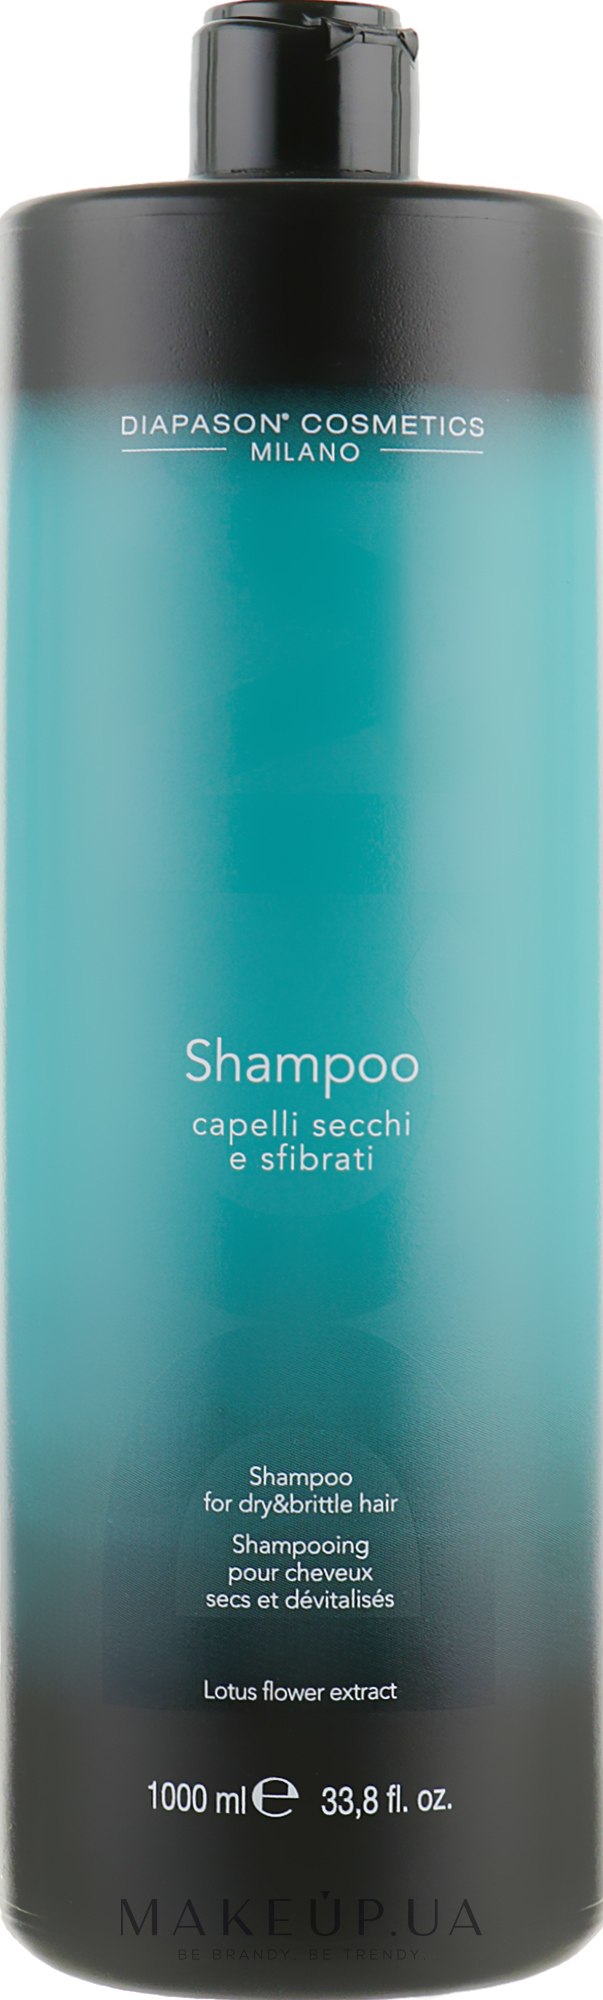 Відновлювальний шампунь для сухого і пошкодженого волосся - DCM Shampoo For Dry And Brittle Hair — фото 1000ml